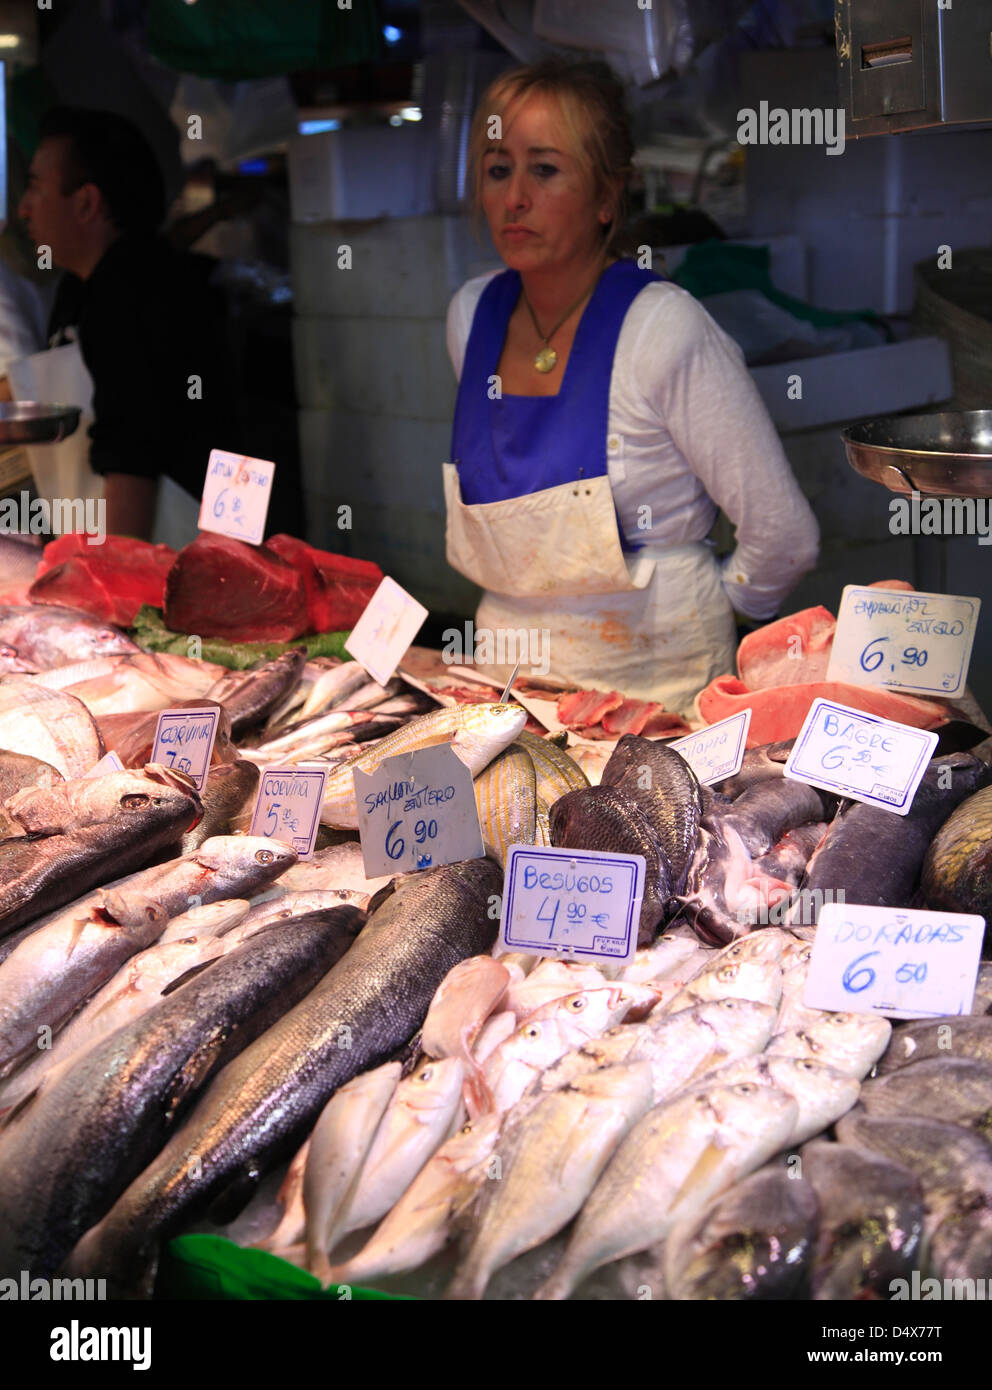 Mercat de la Boqueria near ramblas, Raval, Barcelona, Spain Stock Photo